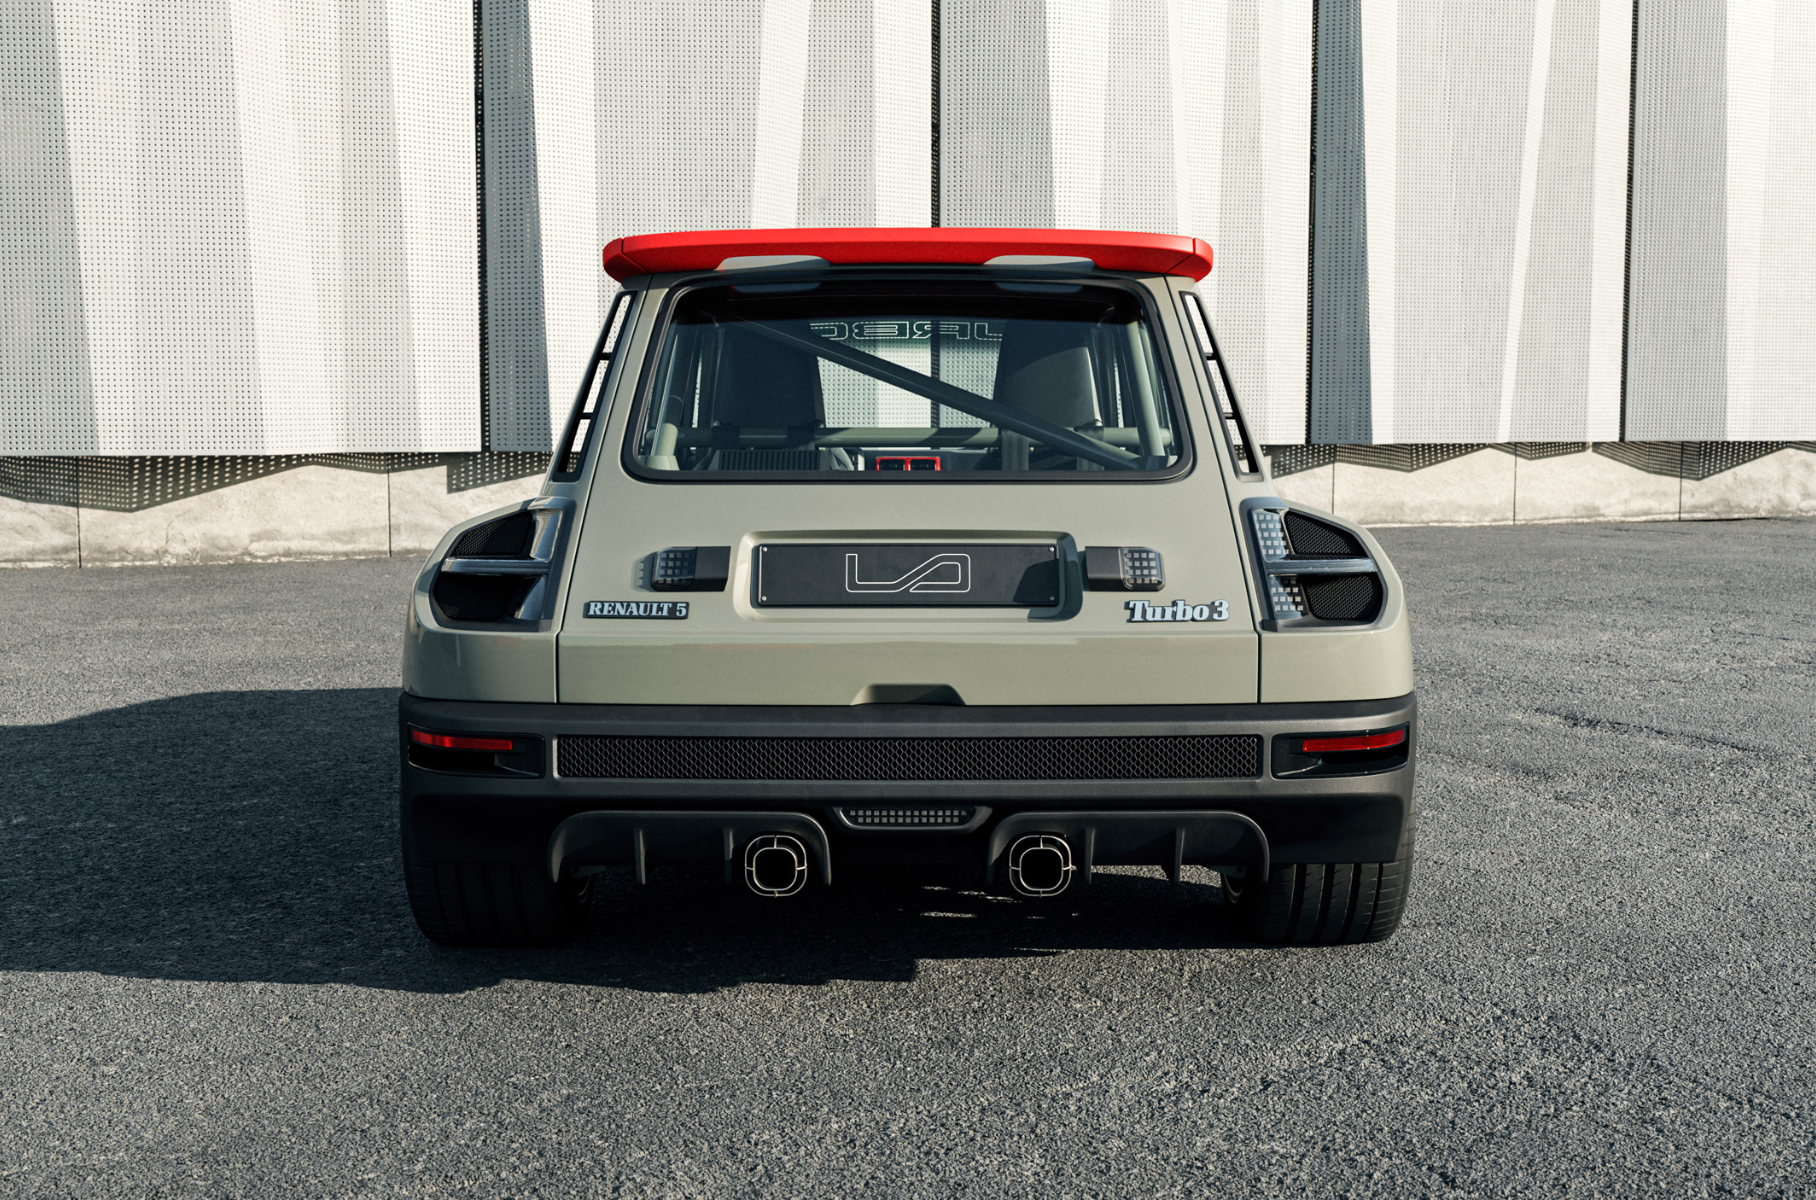 Посмотрите на возрожденный Renault 5 Turbo 3 с карбоновым кузовом и 400-сильным мотором